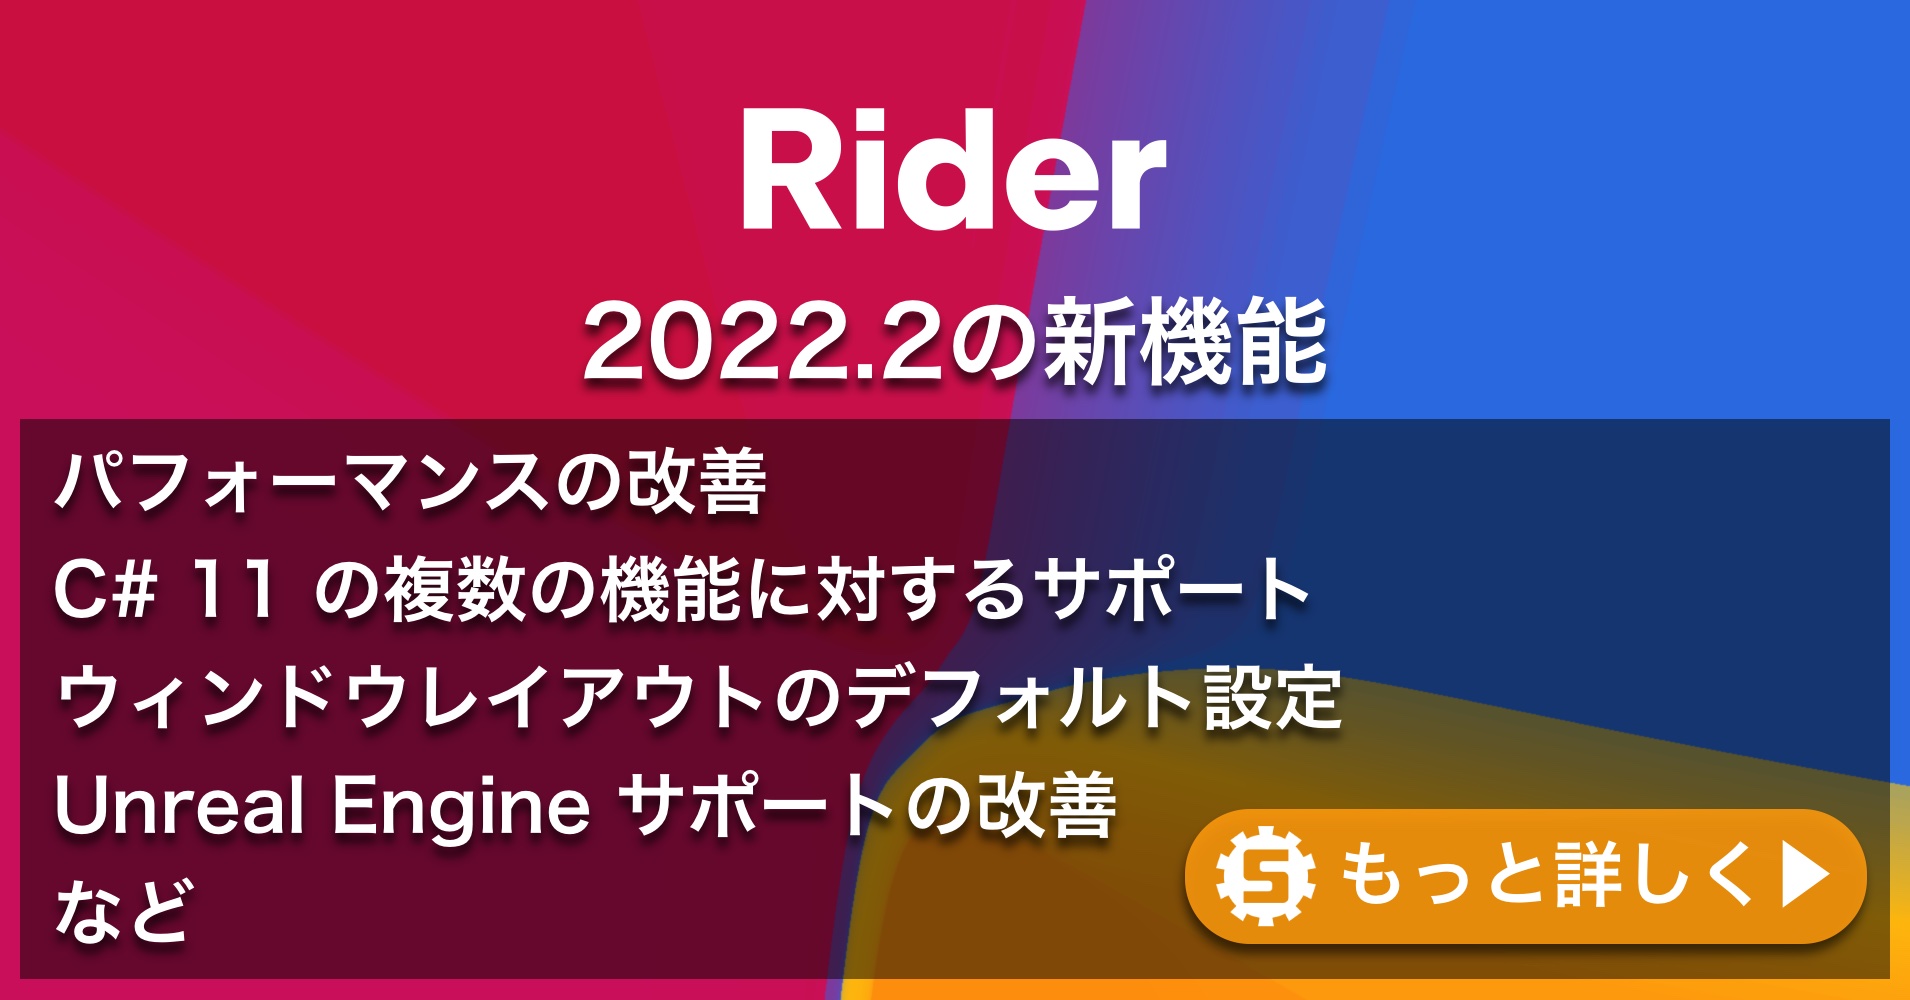 Rider 2022.2の新機能